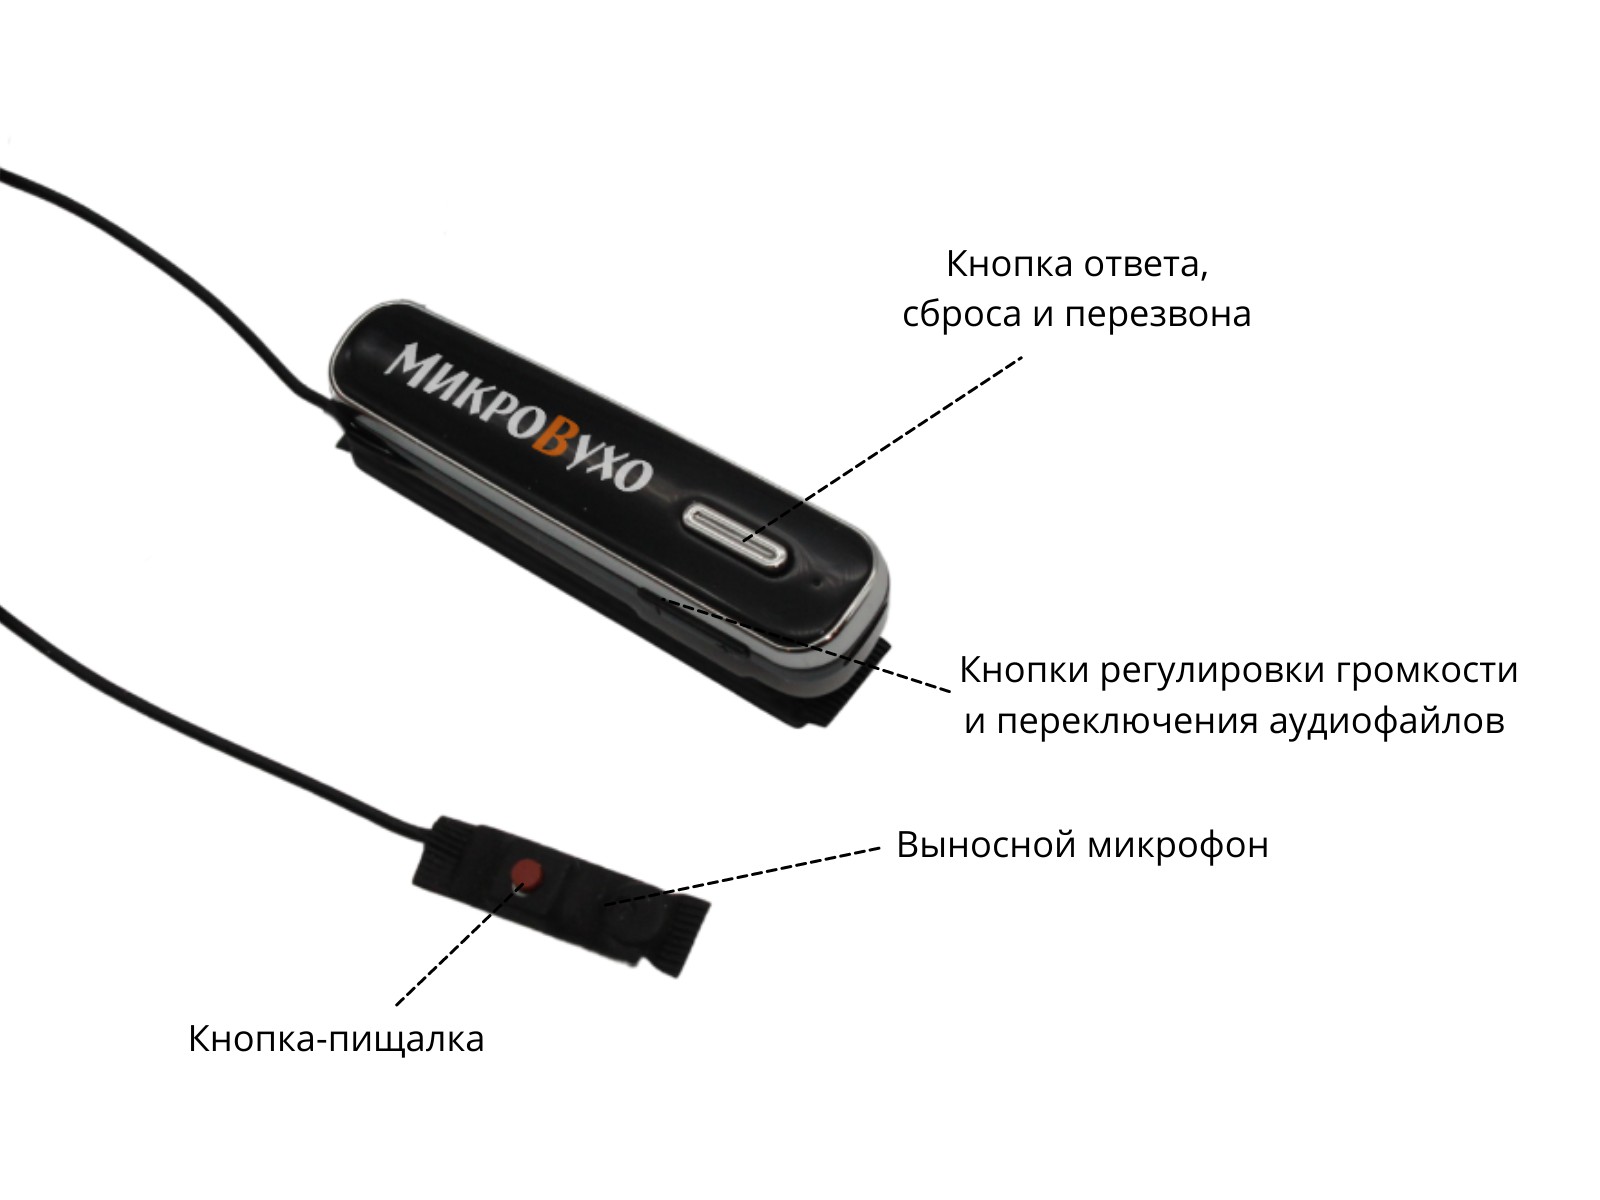 Универсальная гарнитура Bluetooth Box Premier Lite Plus с капсулой Nano 4 мм и магнитами 2 мм - изображение 18